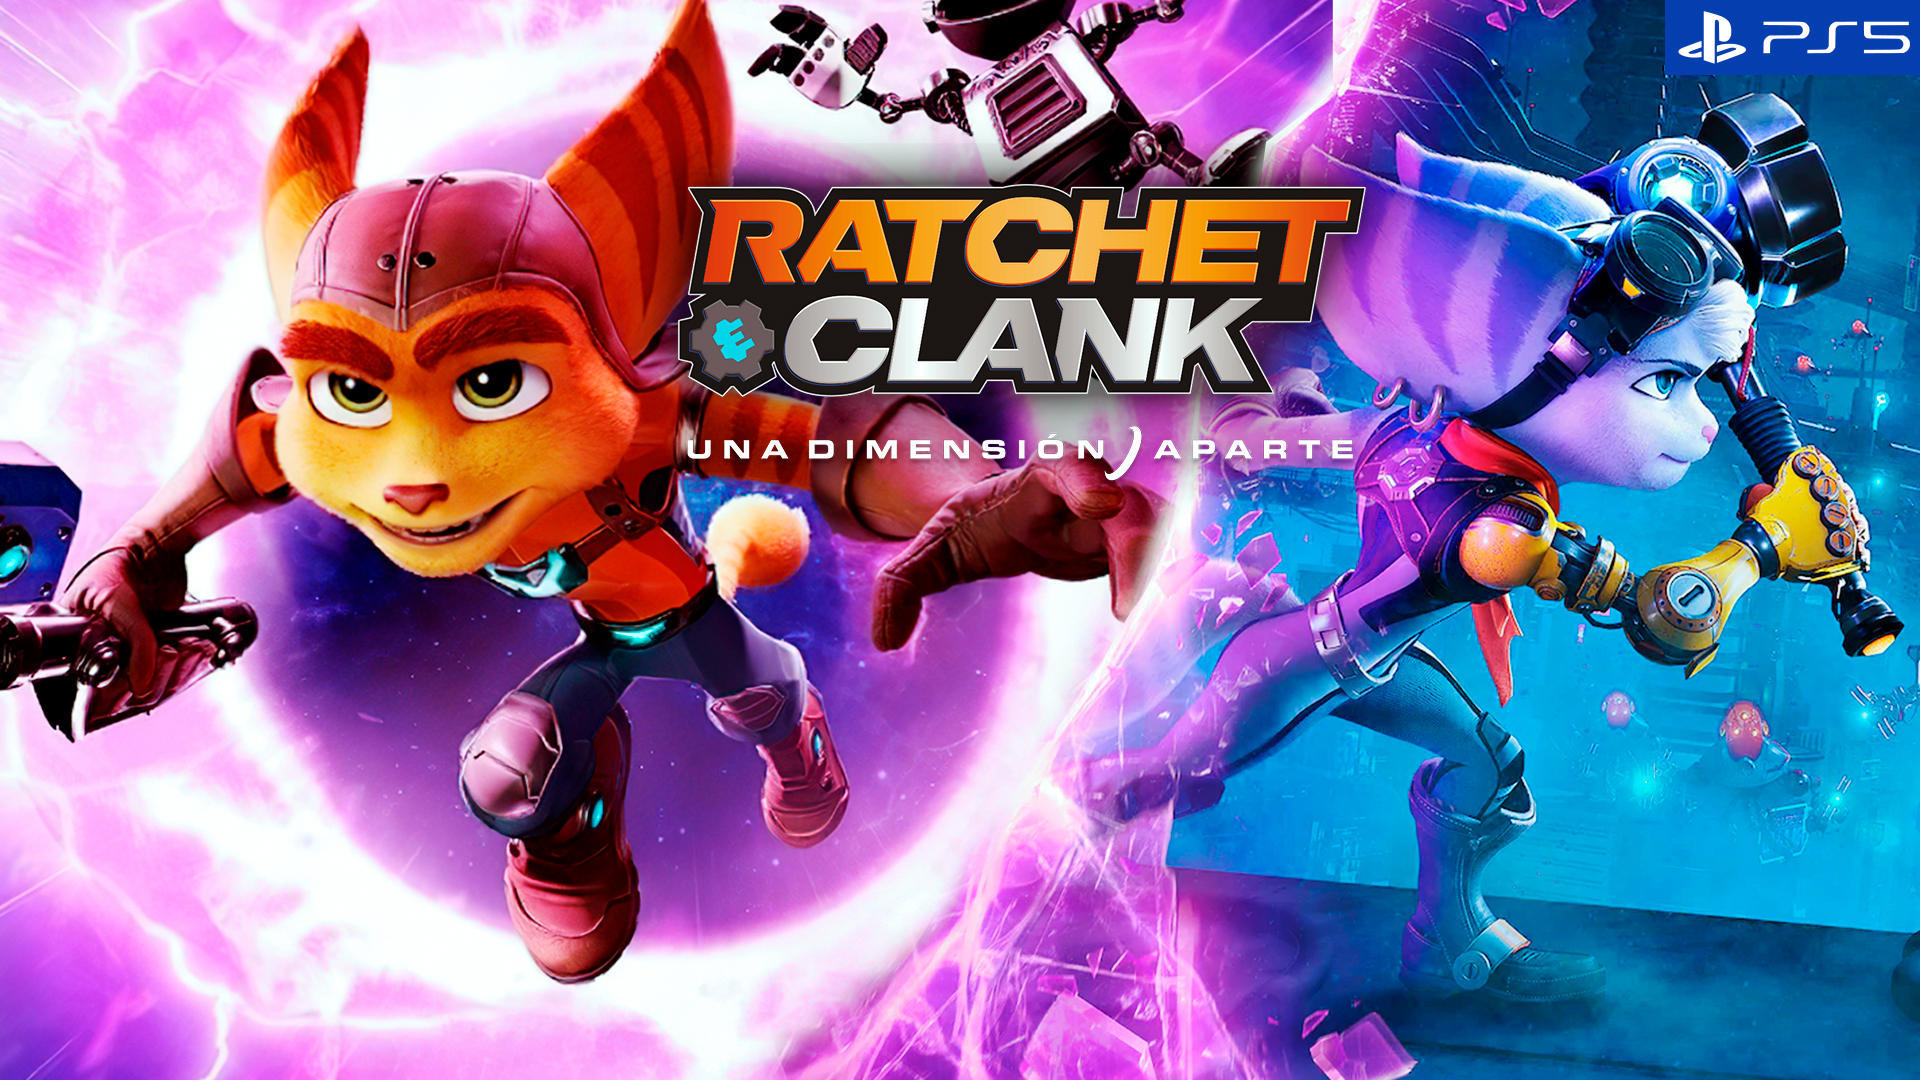 Los 5 mejores juegos de Ratchet & Clank según Metacritic